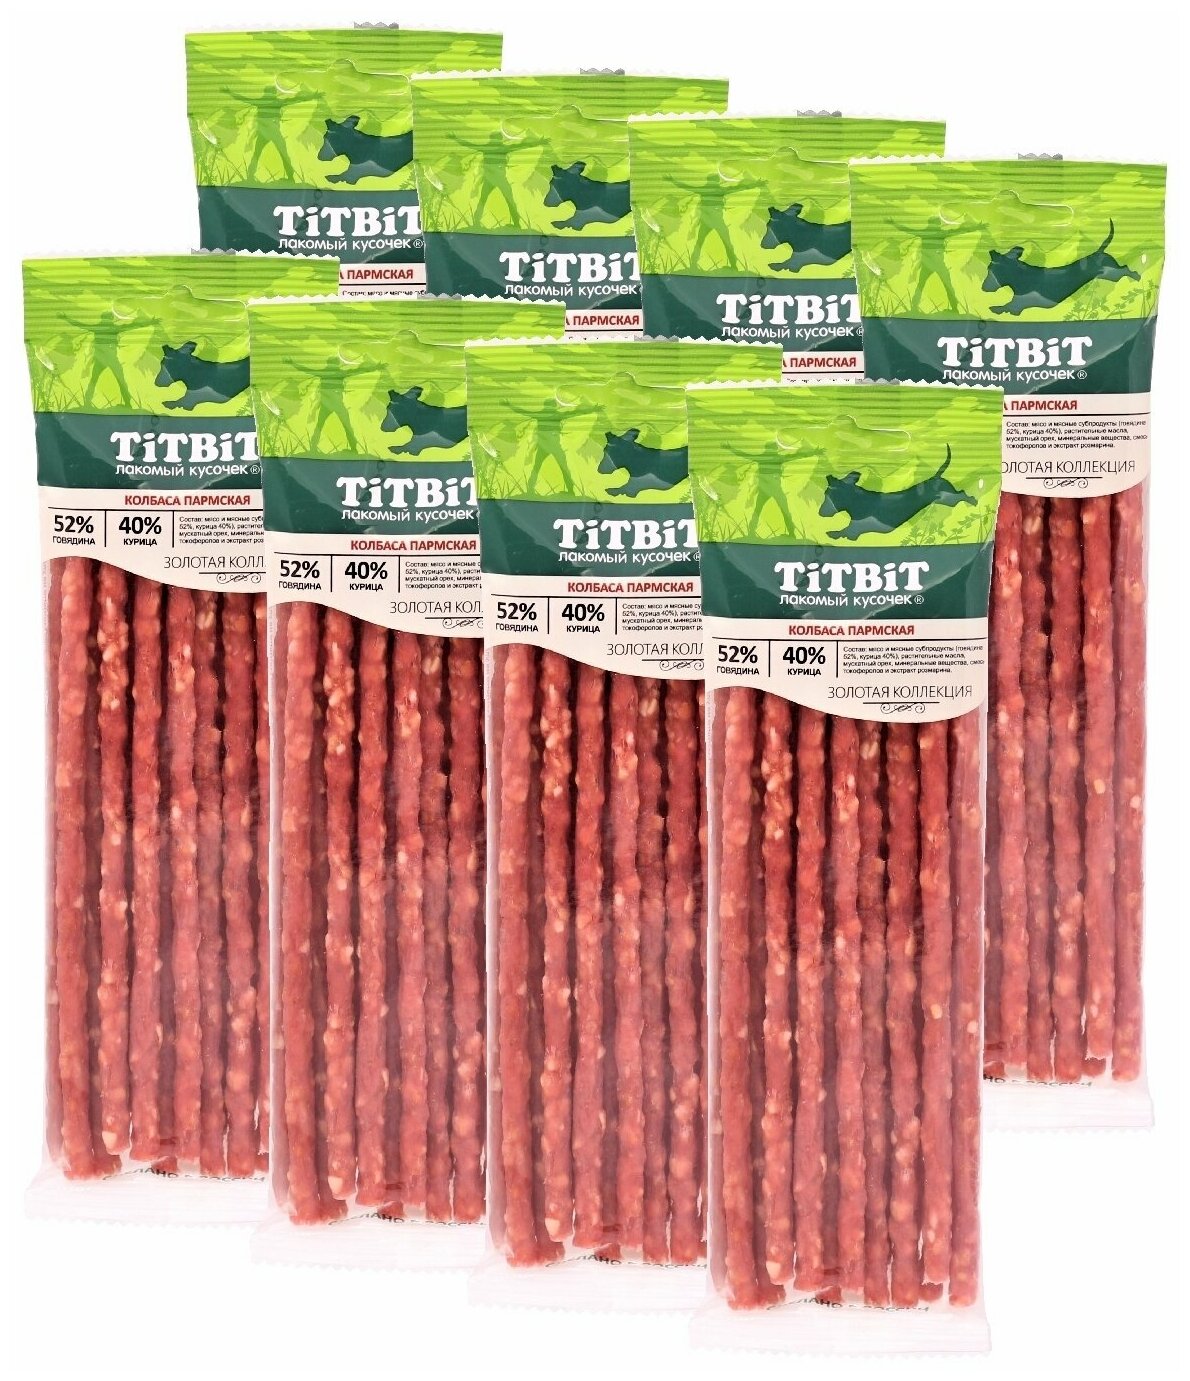 Лакомство для собак всех пород TiTBiT Золотая коллекция Колбаса Пармская из говядины (80 г х 8 упак)